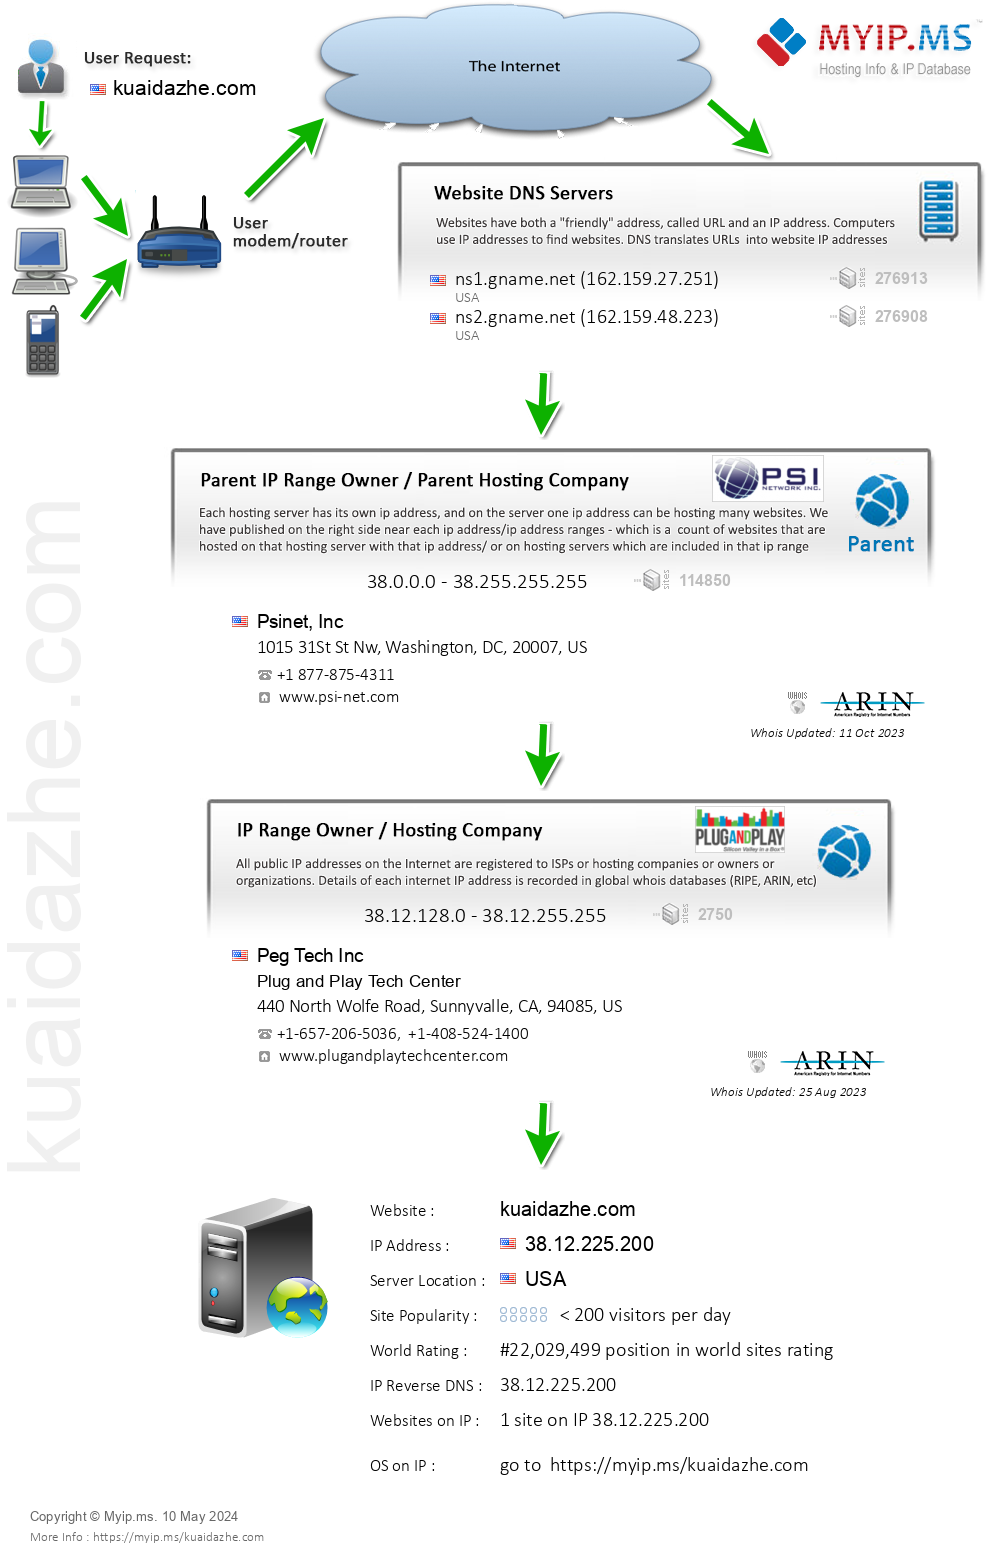 Kuaidazhe.com - Website Hosting Visual IP Diagram